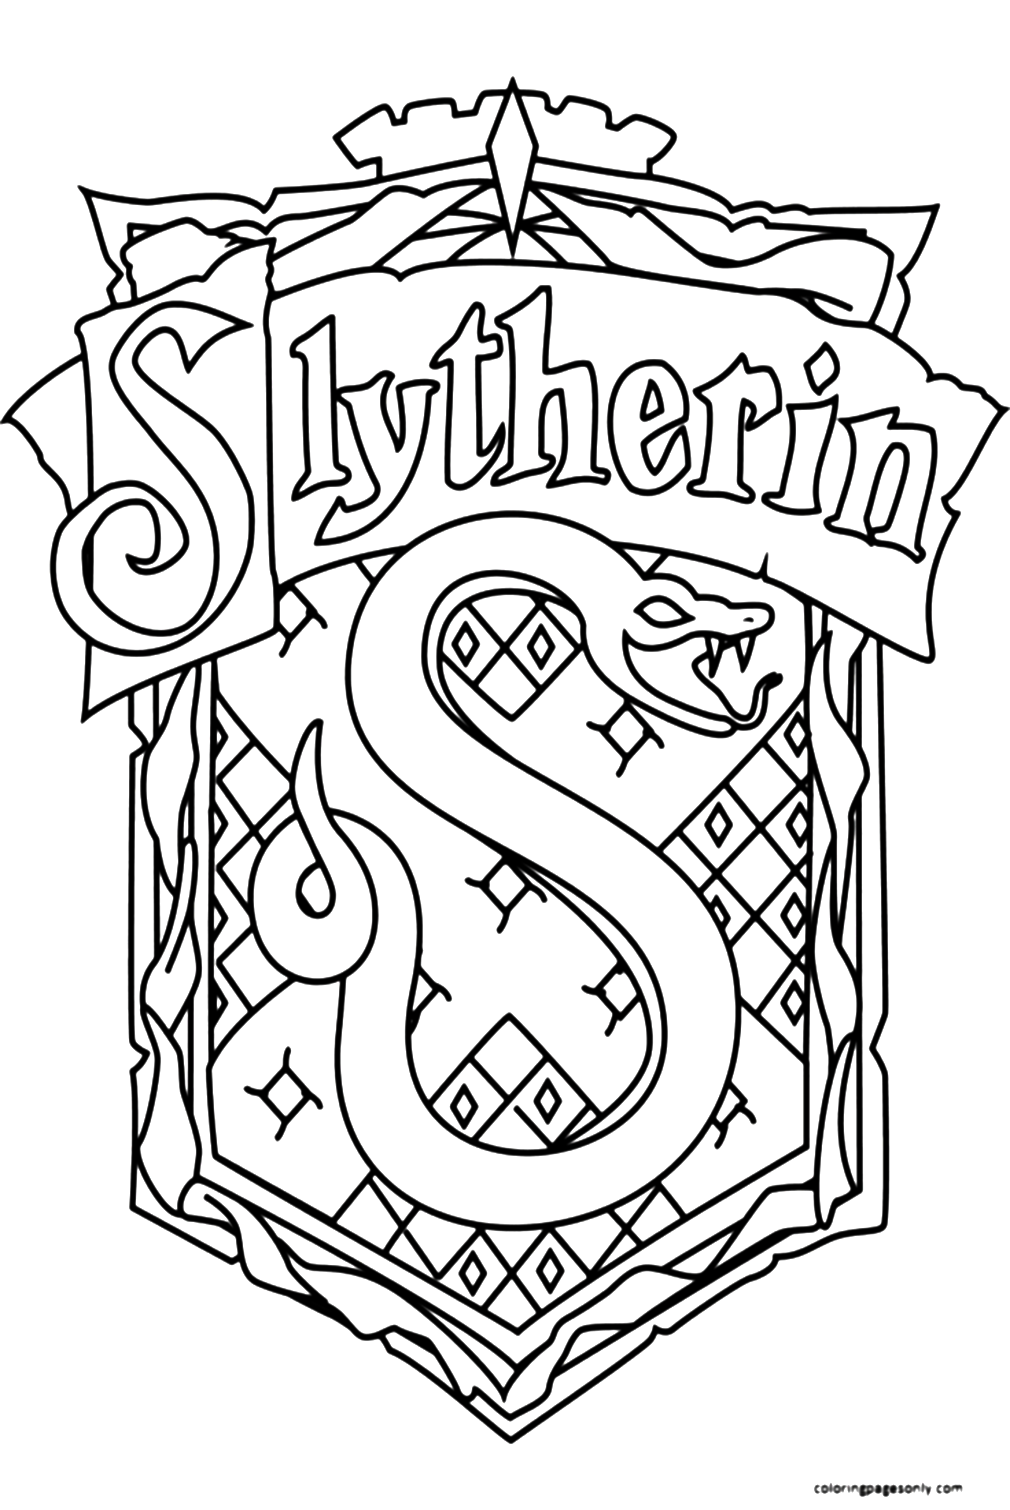 Slytherin-Symbol aus Harry Potter